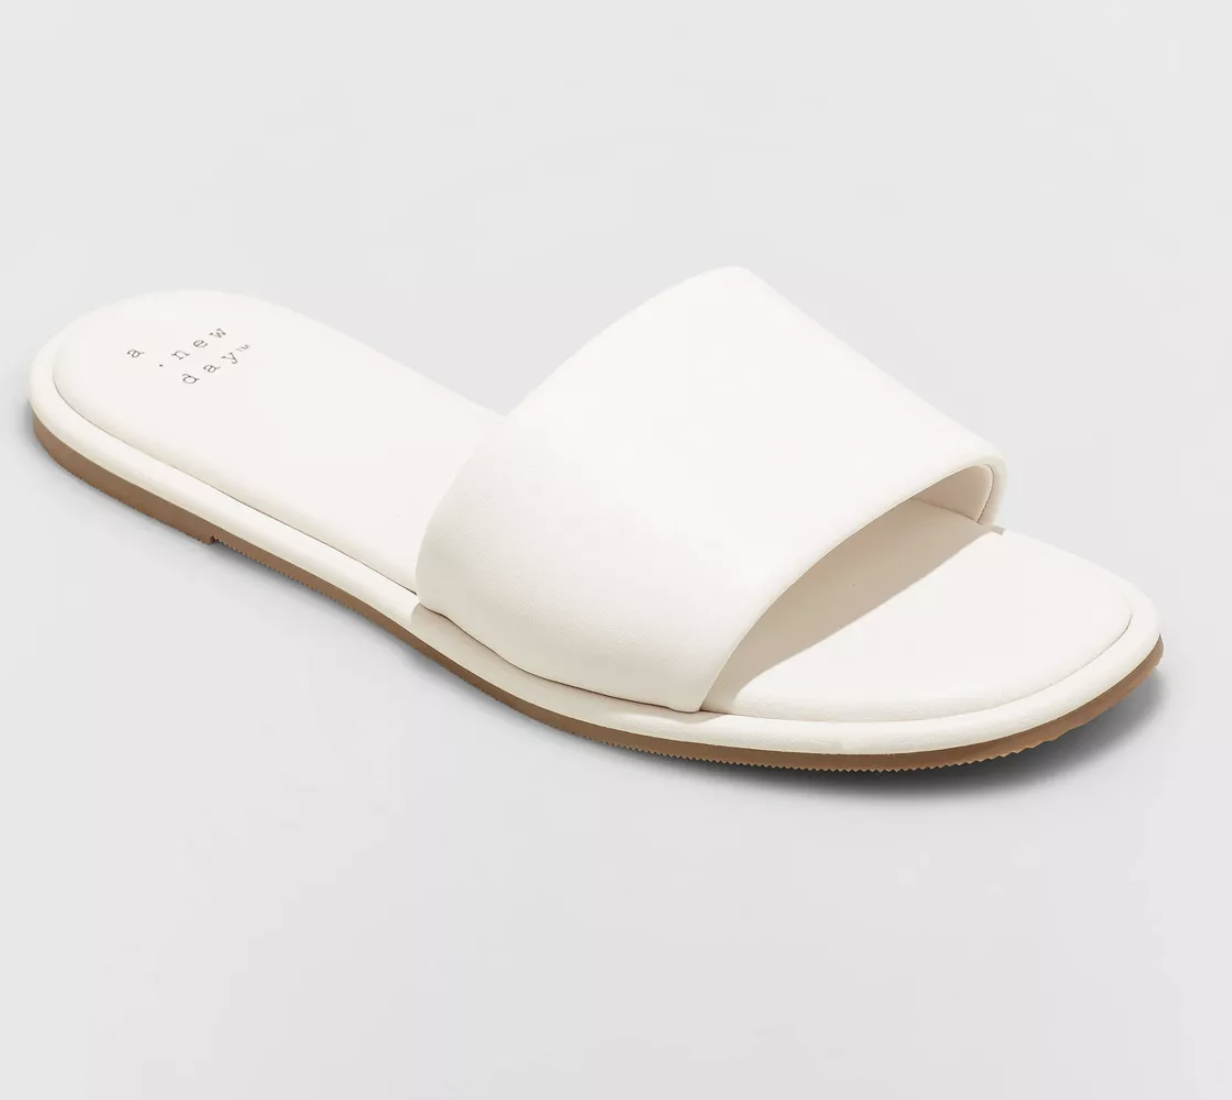 A white slide sandal